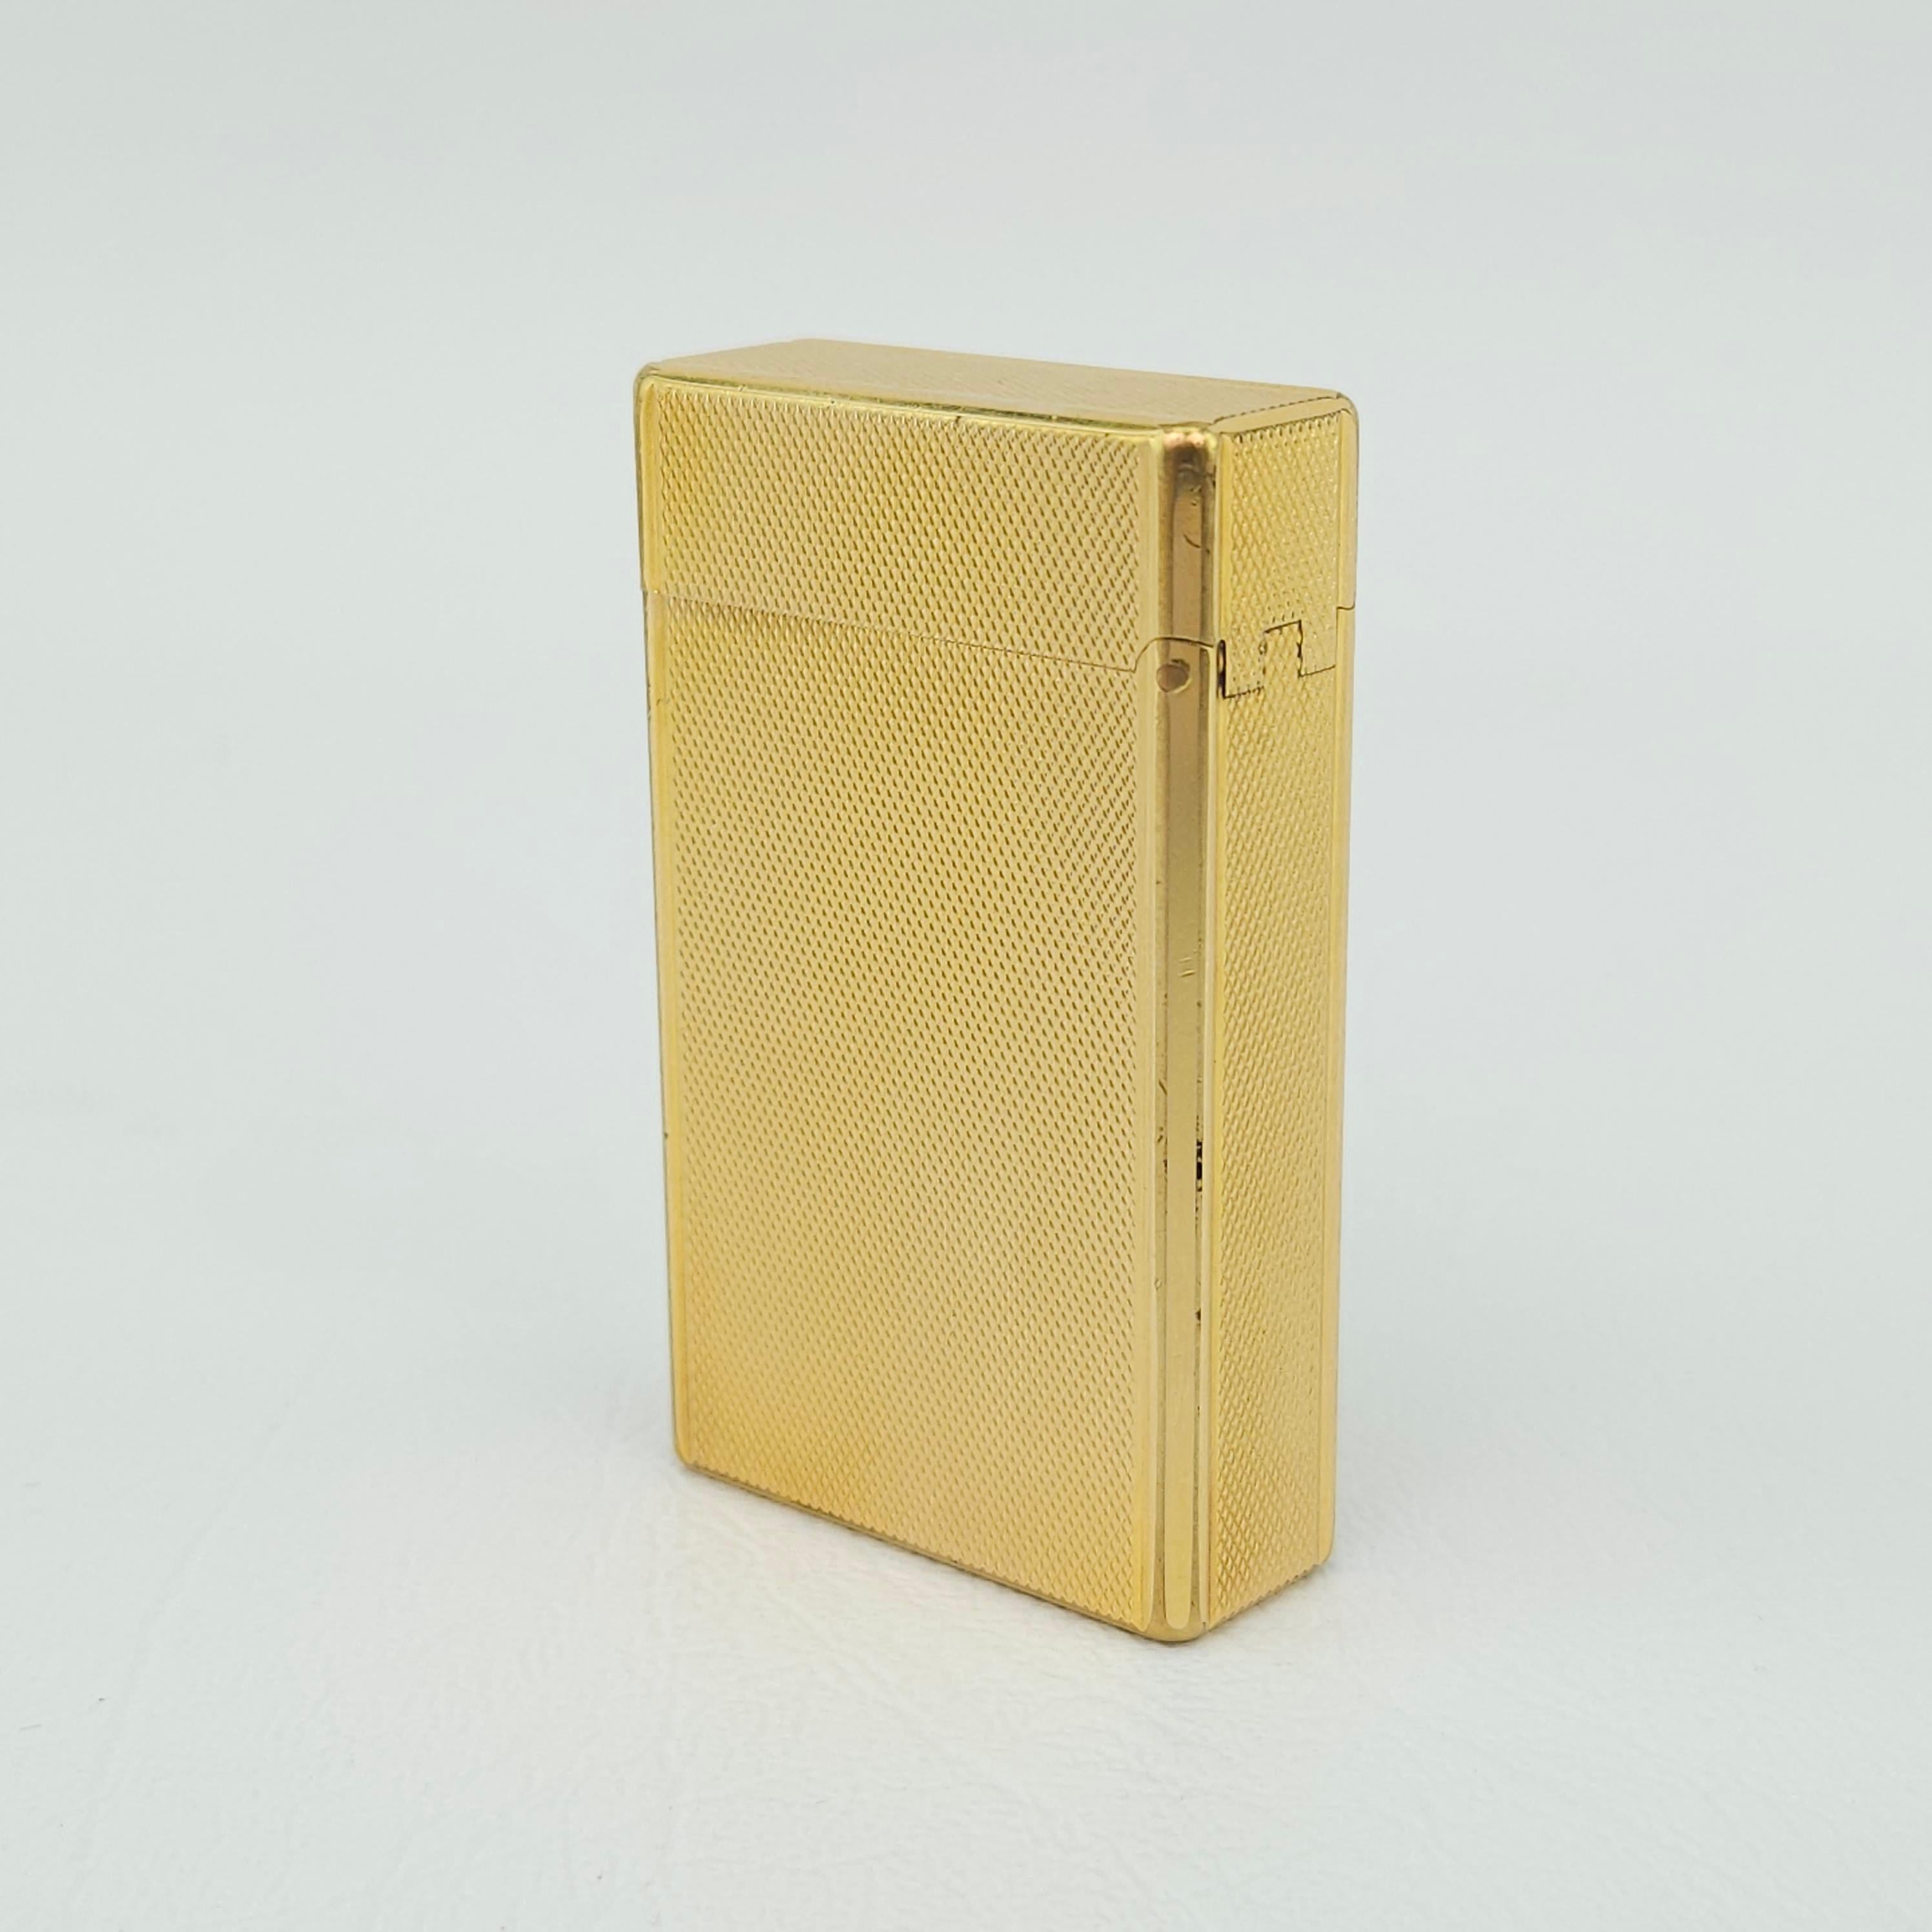 Vintage Vergoldetes Taschengasfeuerzeug von S. T. Dupont, Paris.  In neuwertigem Zustand und scheinbar nie benutzt worden.  